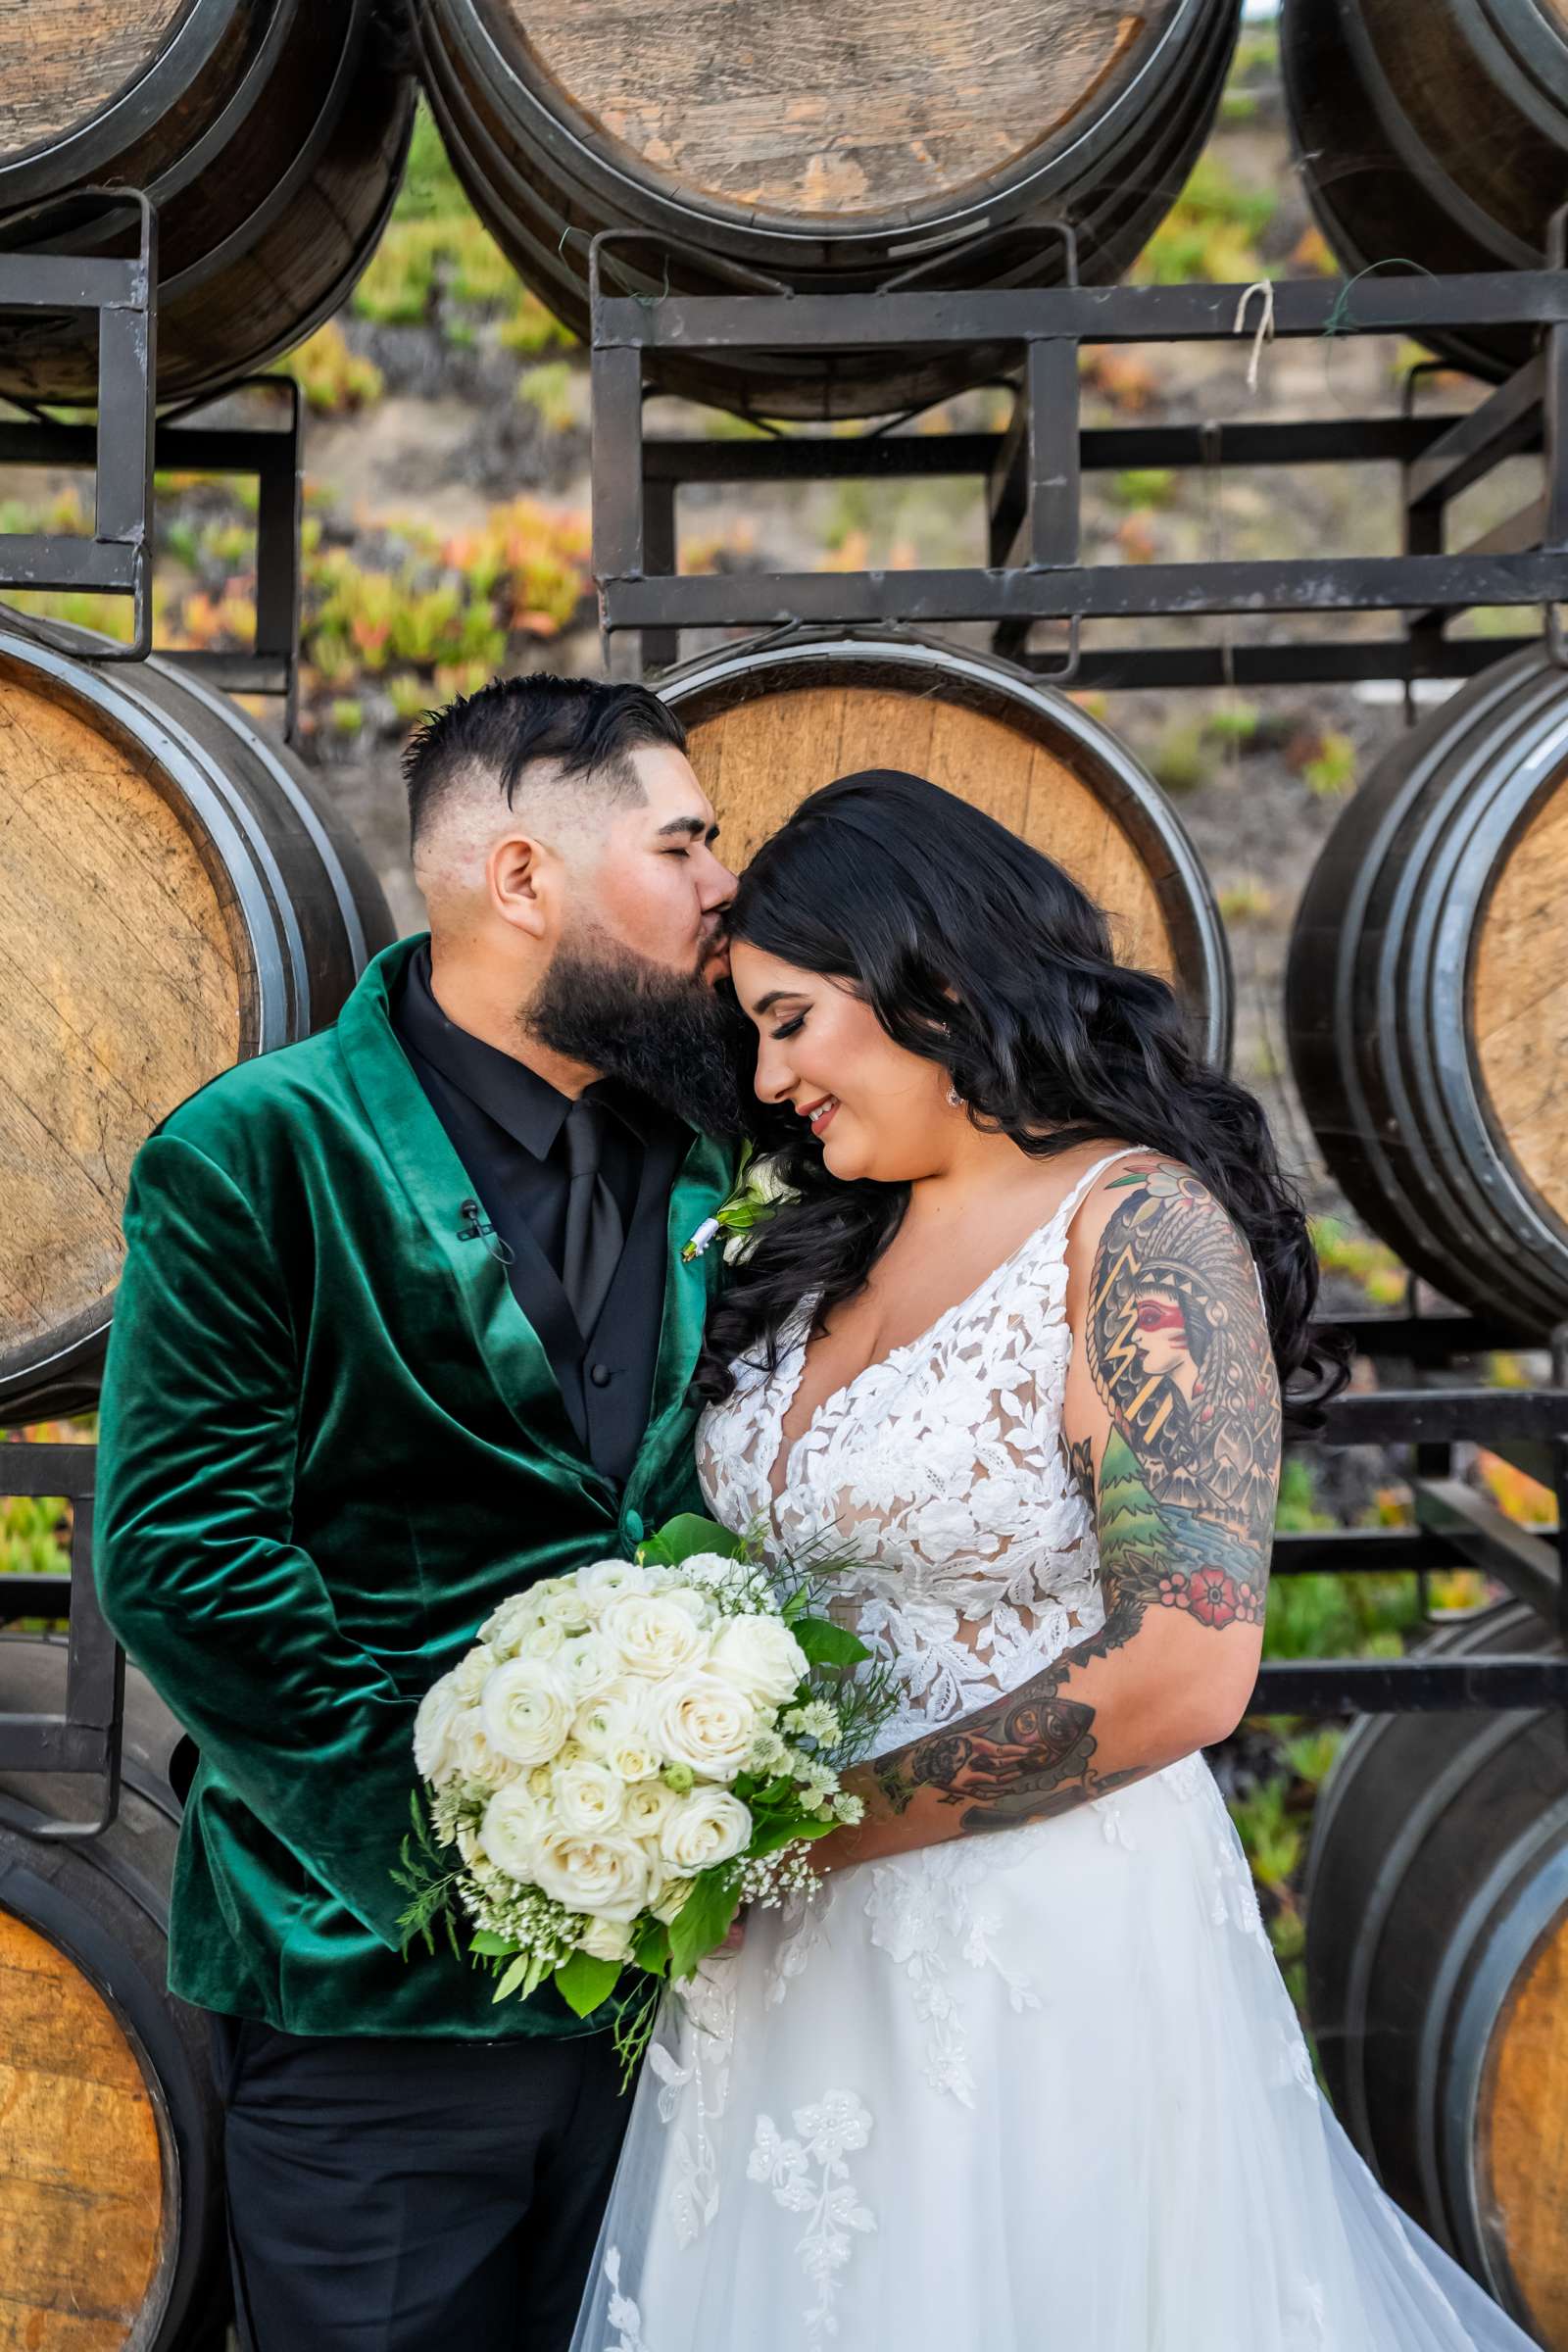 La Hacienda Wedding, Ashley and Alvaro Wedding Photo #13 by True Photography